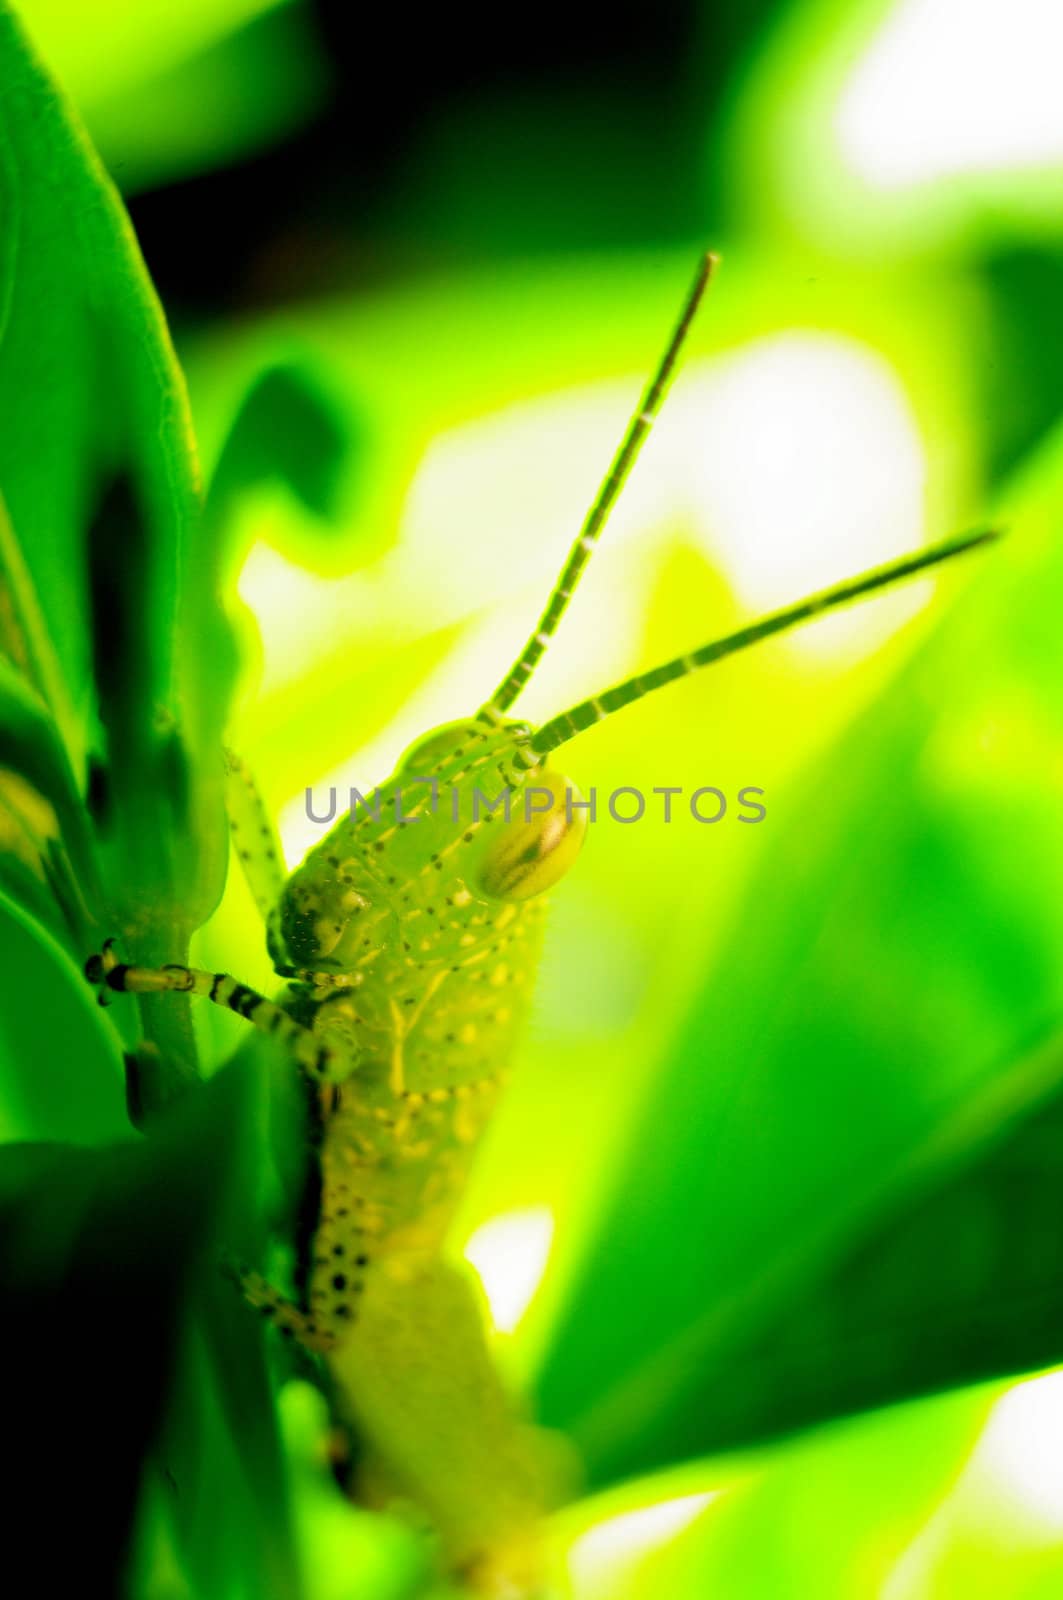 Grasshopper in garden by pixbox77